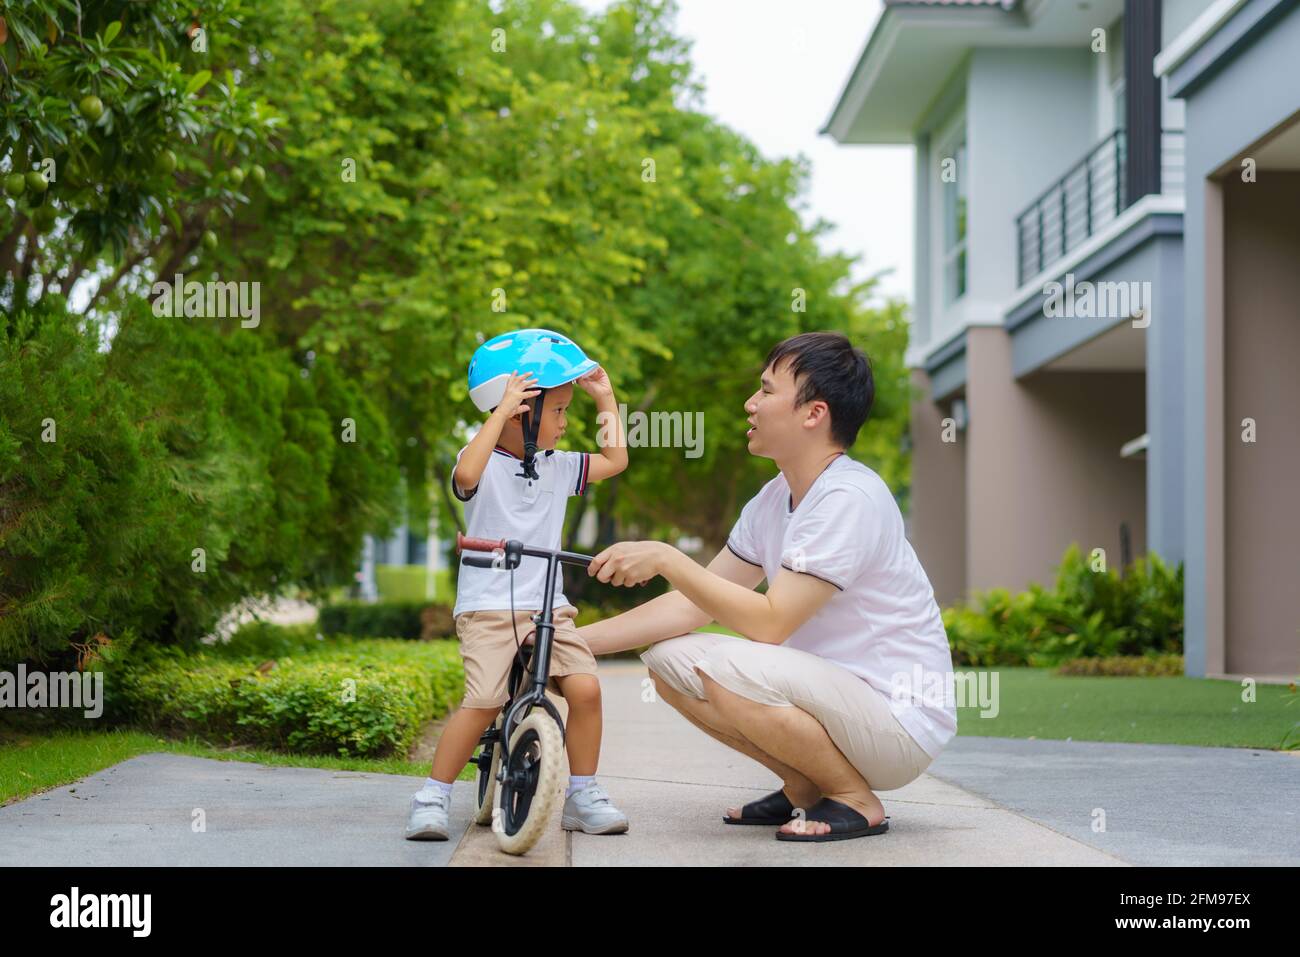 Der asiatische Vater trägt einen Helm für seinen Sohn während er seinem Kind beibringt, wie man in einem Nachbarschaftsgarten Fahrrad fährt, interagieren Väter mit ihren Kindern Stockfoto